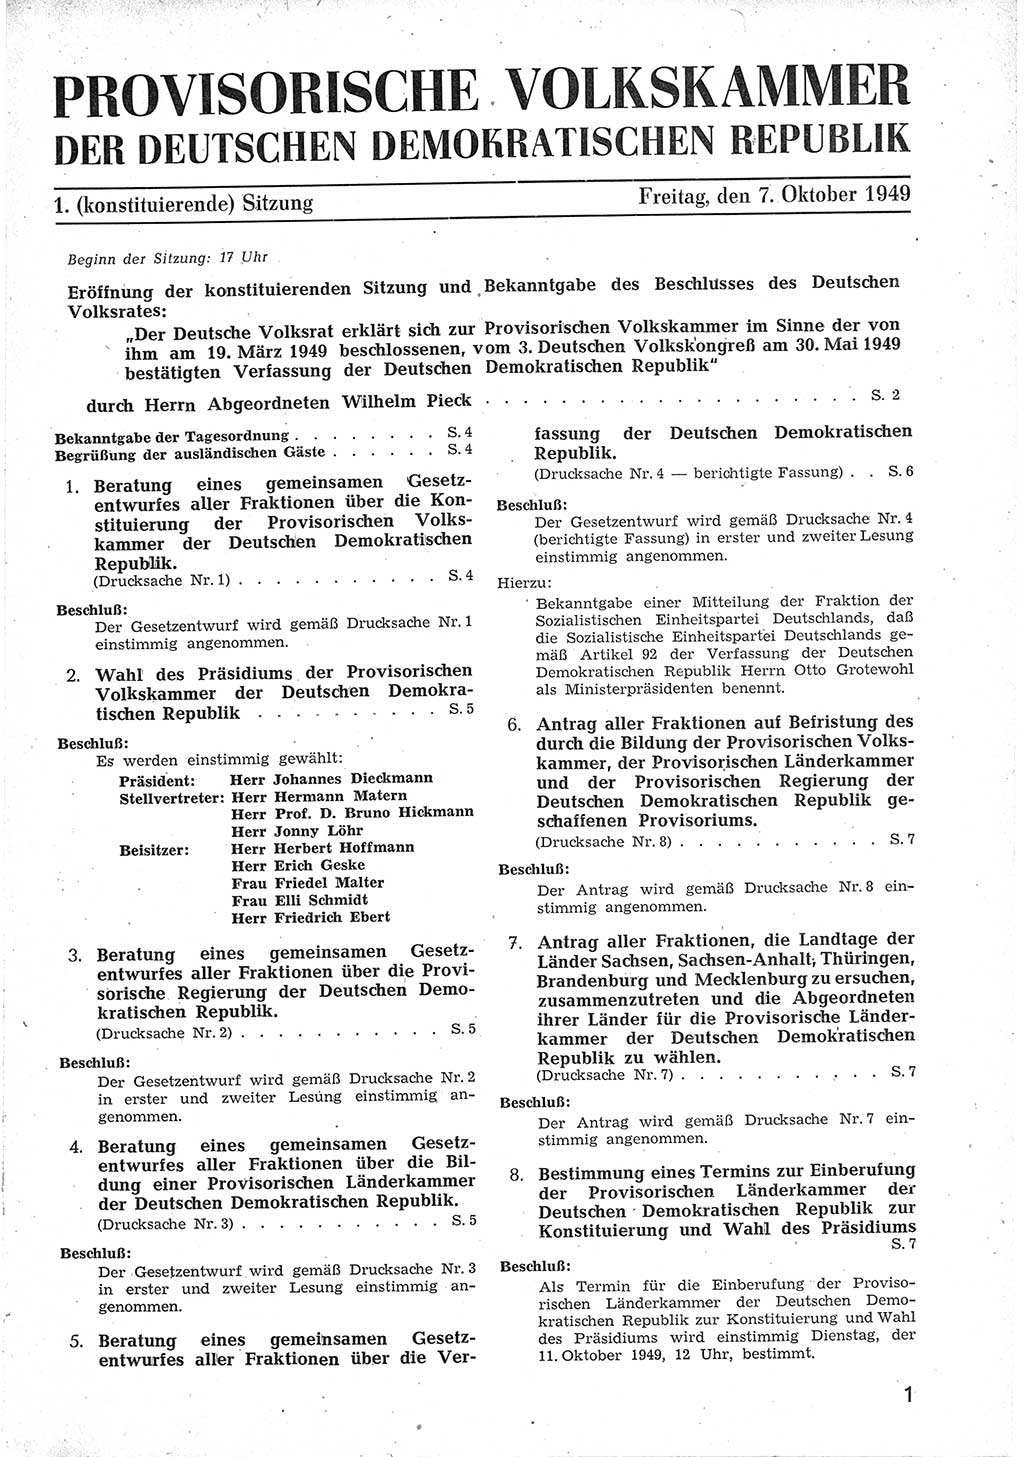 Provisorische Volkskammer (VK) der Deutschen Demokratischen Republik (DDR) 1949-1950, Dokument 13 (Prov. VK DDR 1949-1950, Dok. 13)